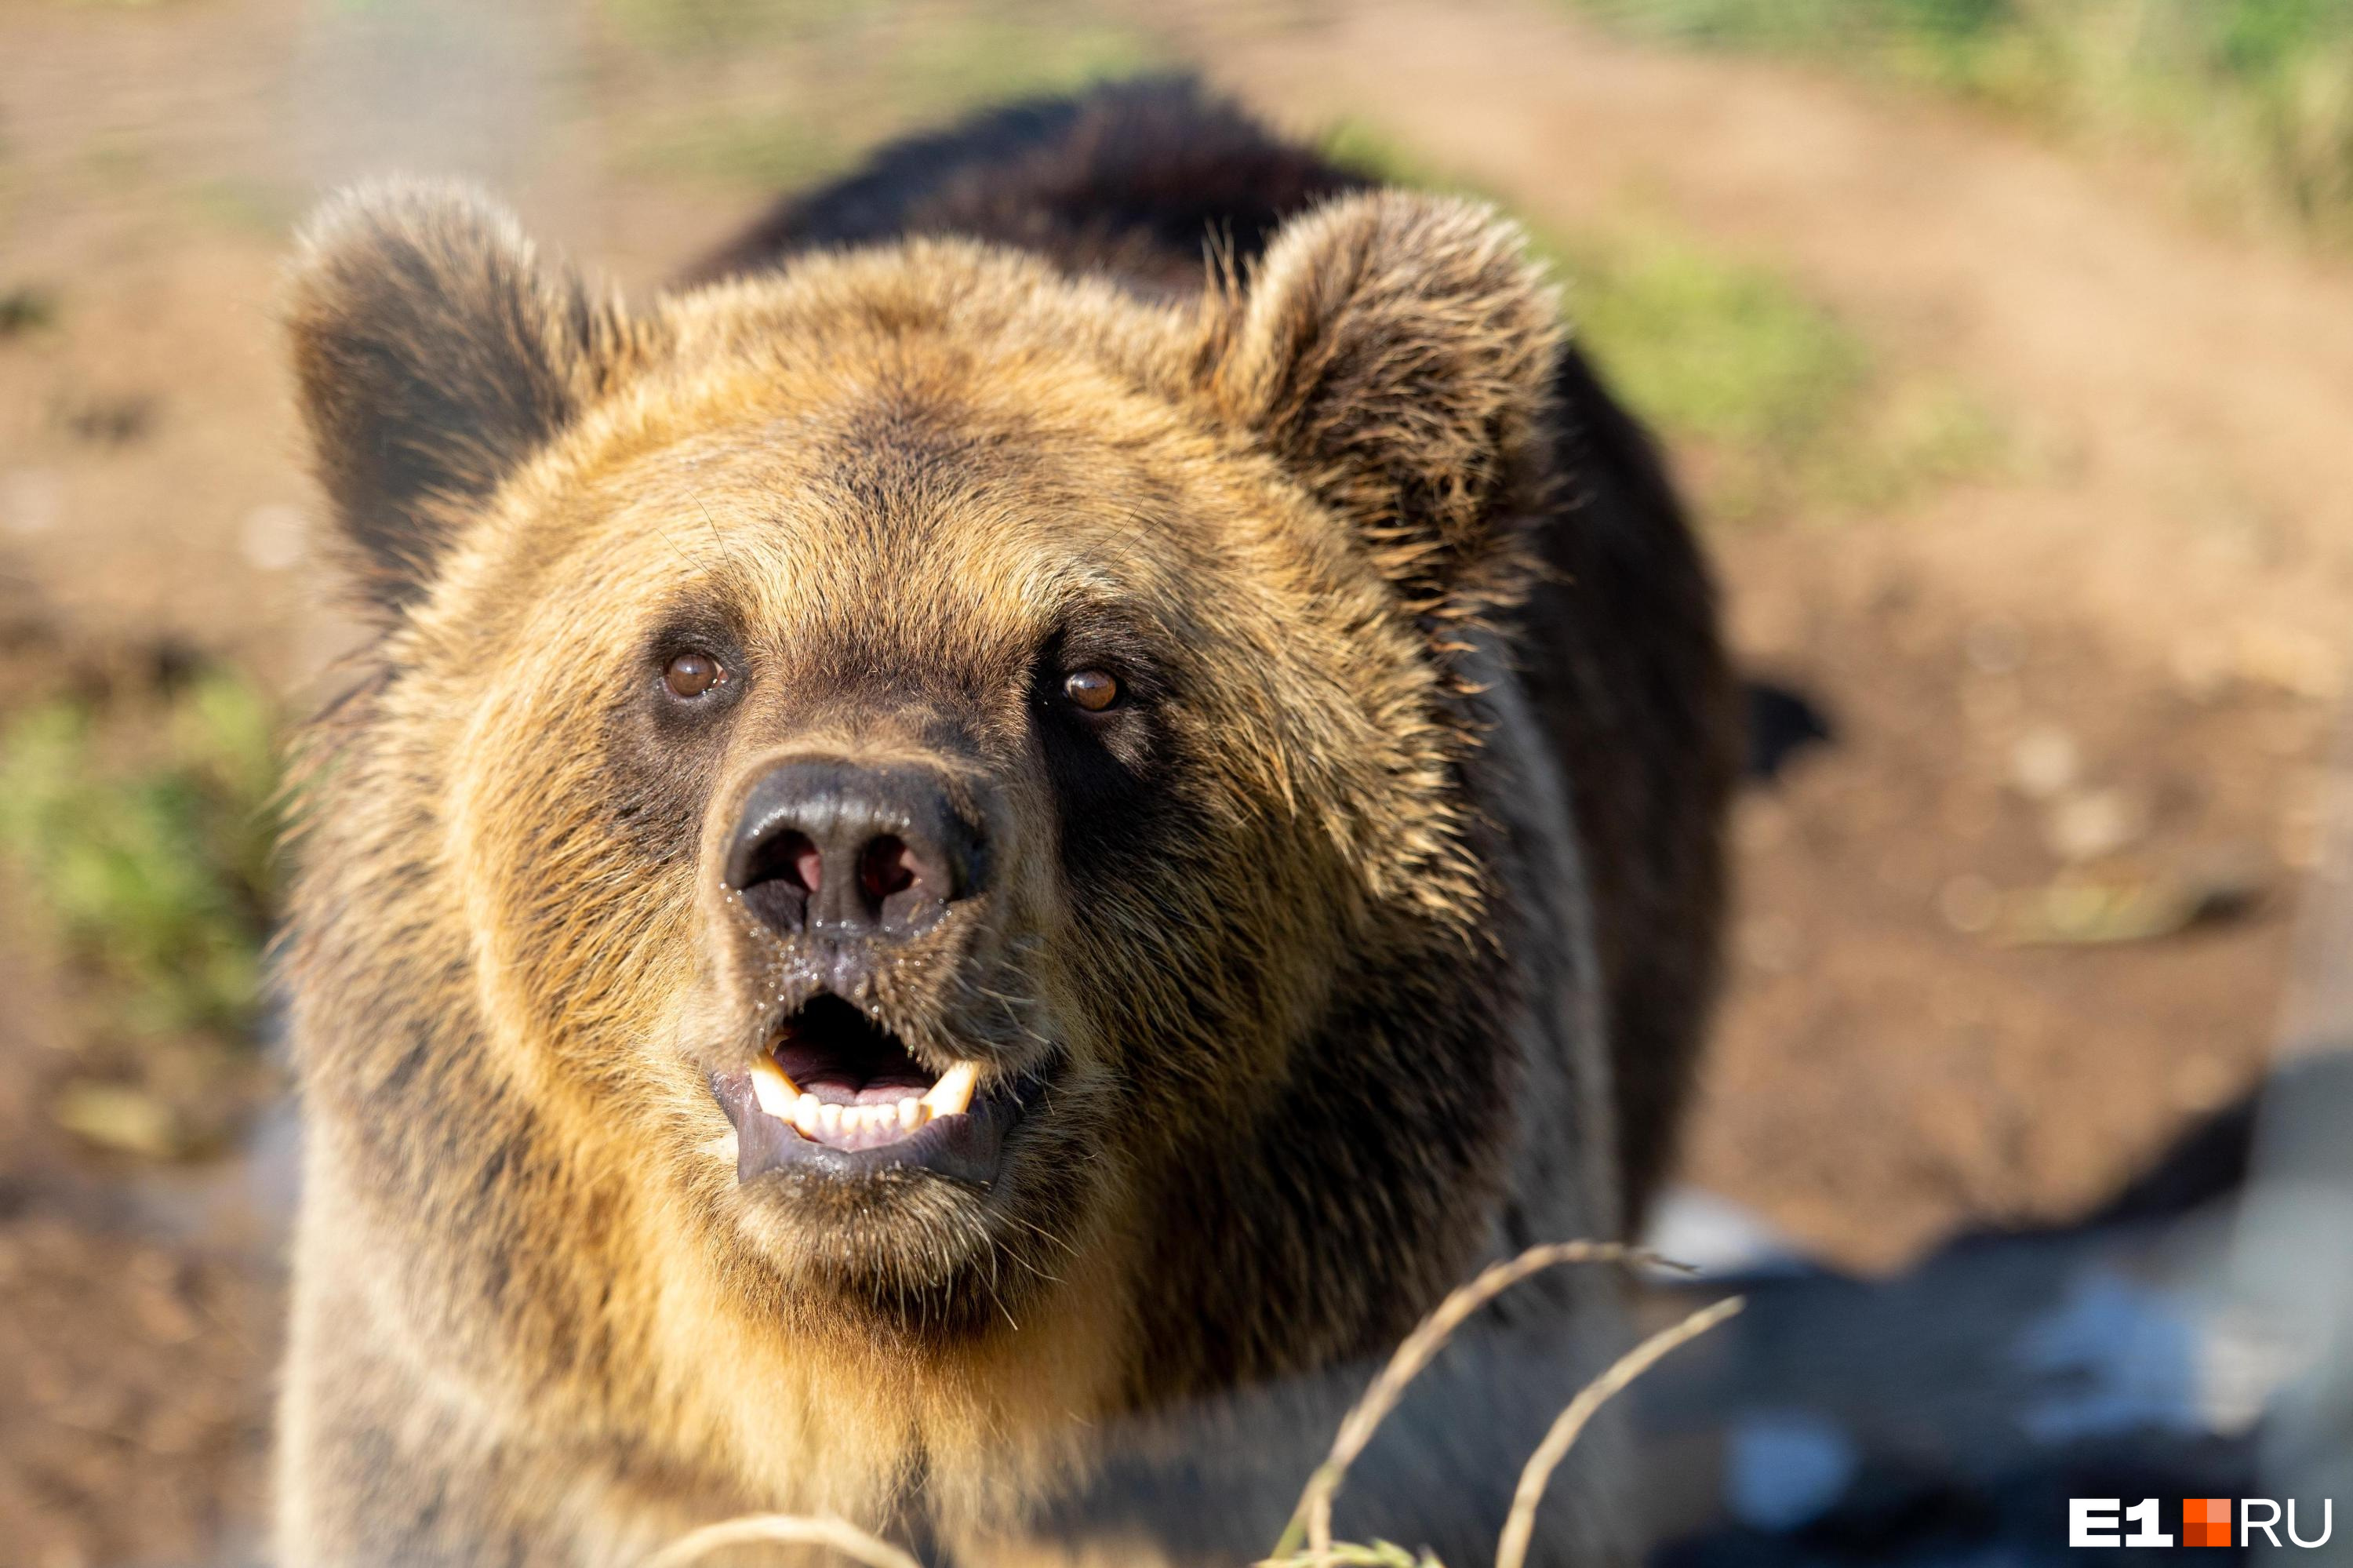 В Свердловской области лесорубы случайно разбудили медведя из спячки. Объявлено предупреждение